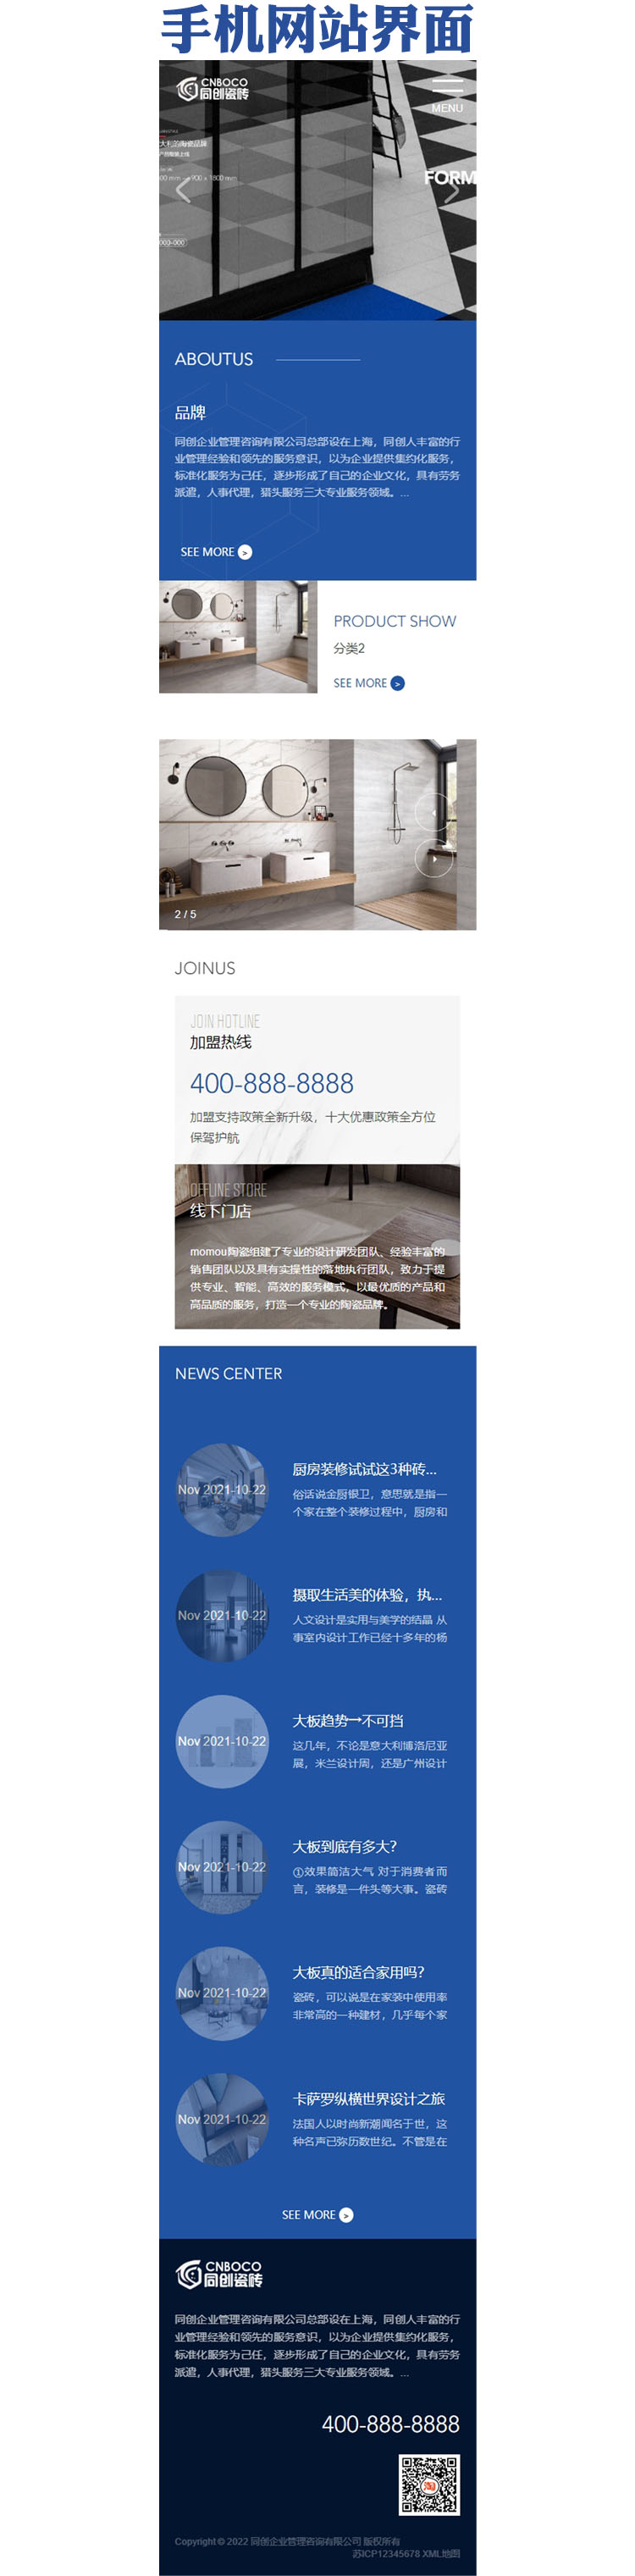 响应式品牌建材瓷砖网站模板-XX219-3